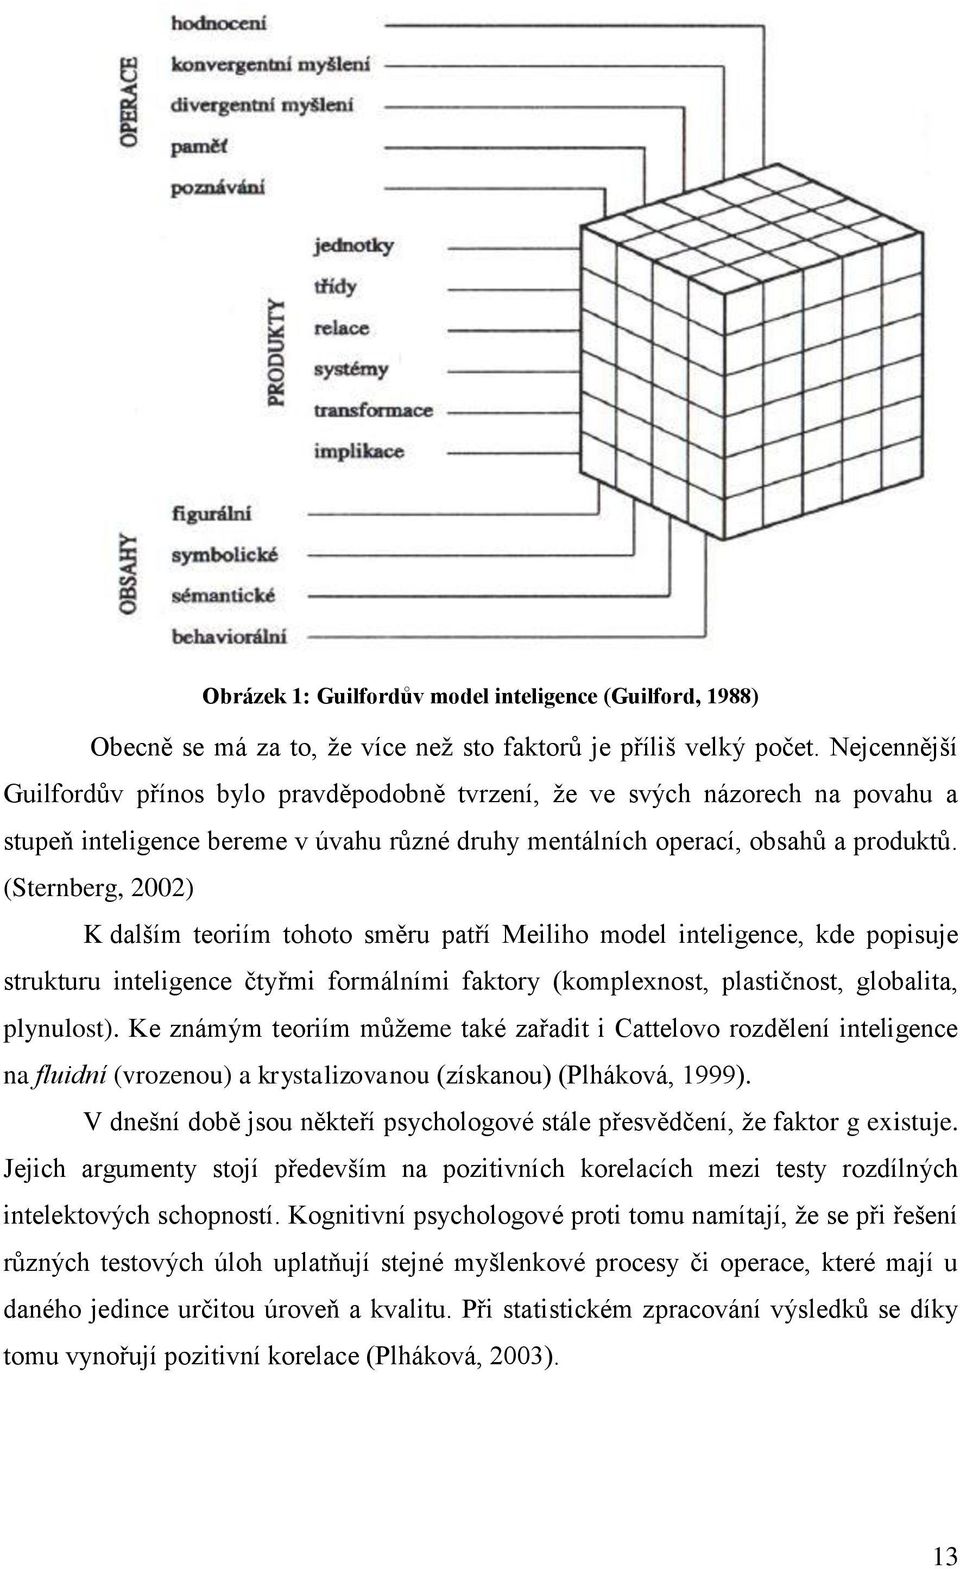 (Sternberg, 2002) K dalším teoriím tohoto směru patří Meiliho model inteligence, kde popisuje strukturu inteligence čtyřmi formálními faktory (komplexnost, plastičnost, globalita, plynulost).